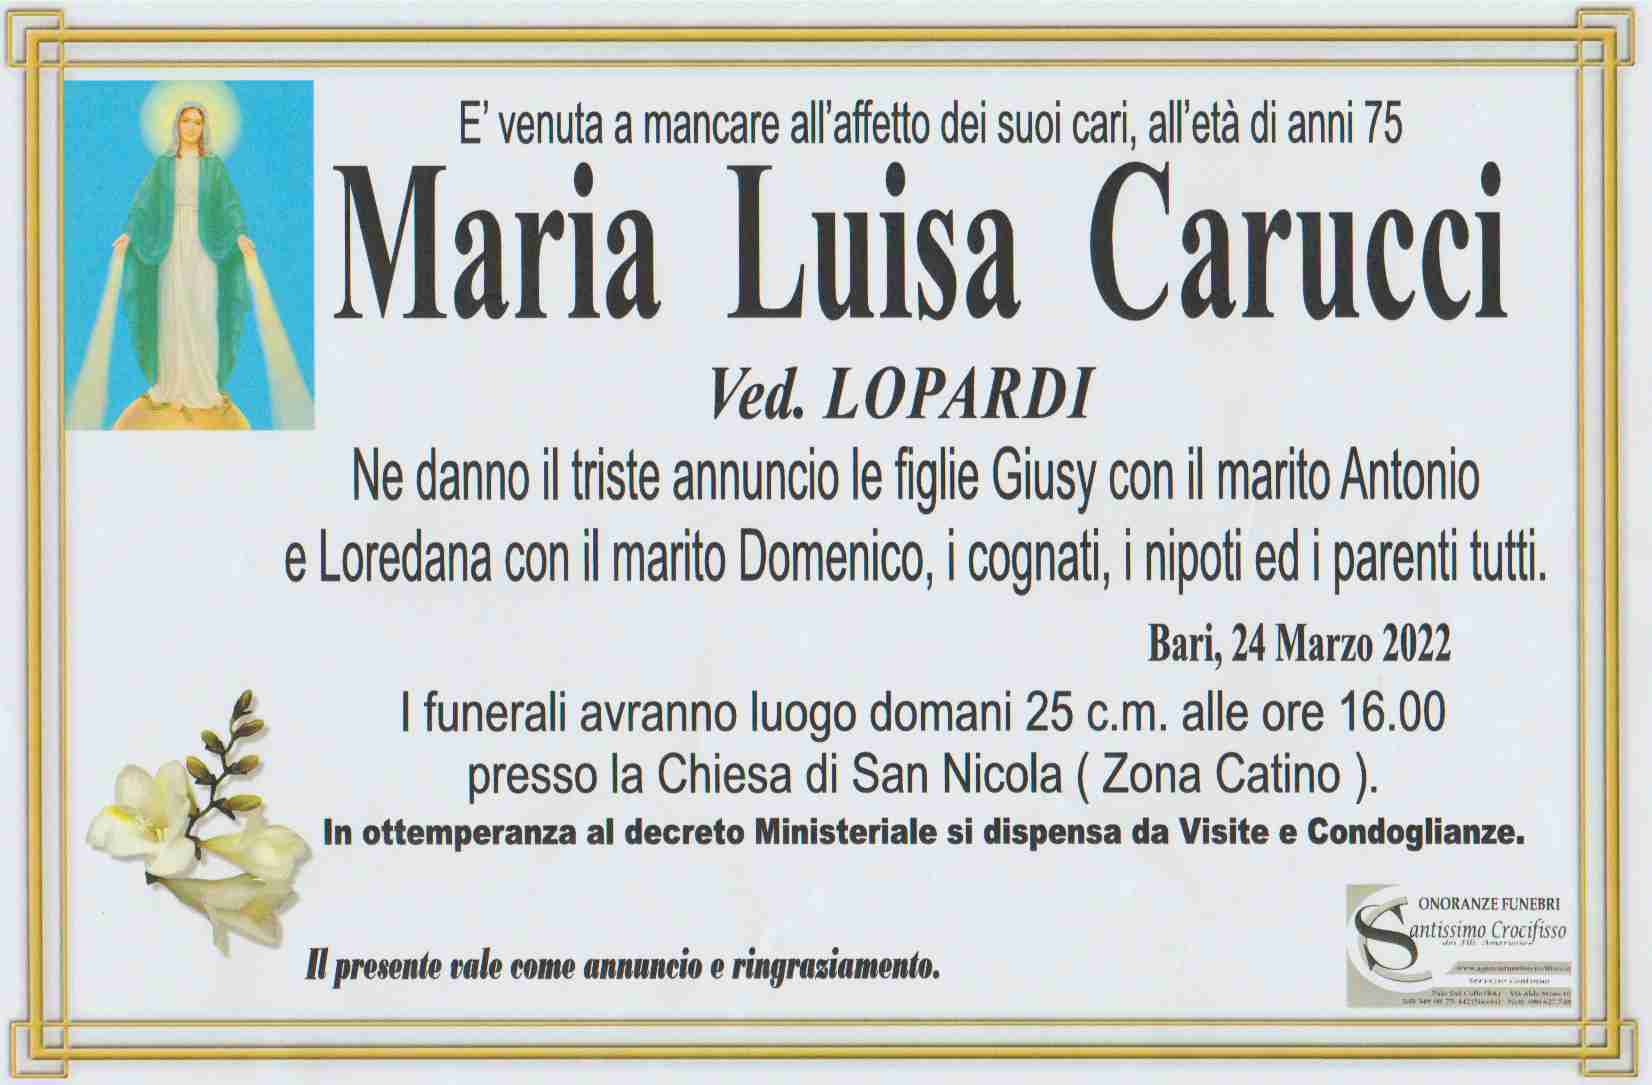 Maria Luisa Carucci